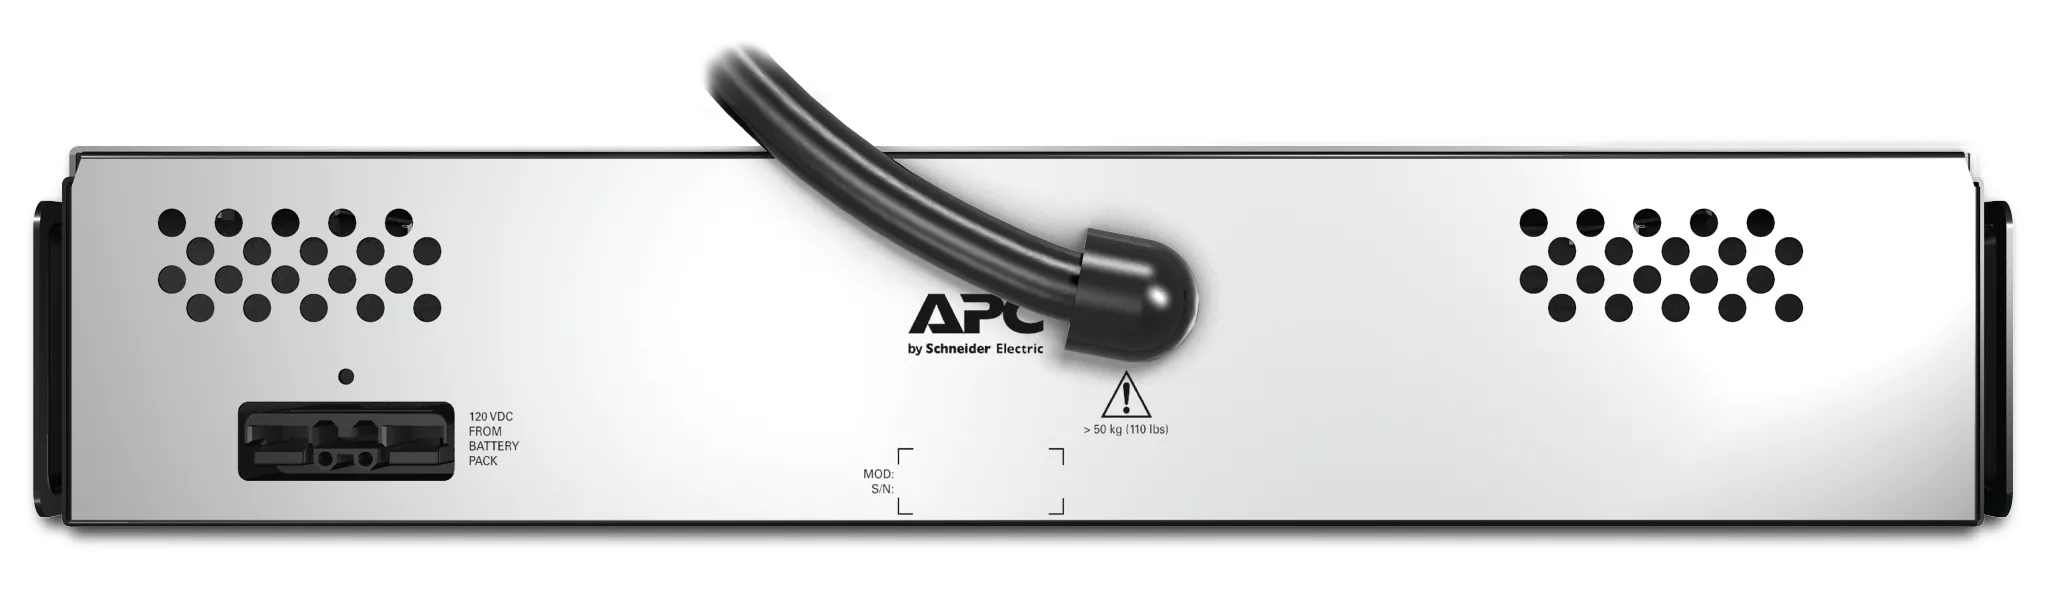 Achat APC C Smart-UPS X 120V External Battery Pack sur hello RSE - visuel 3